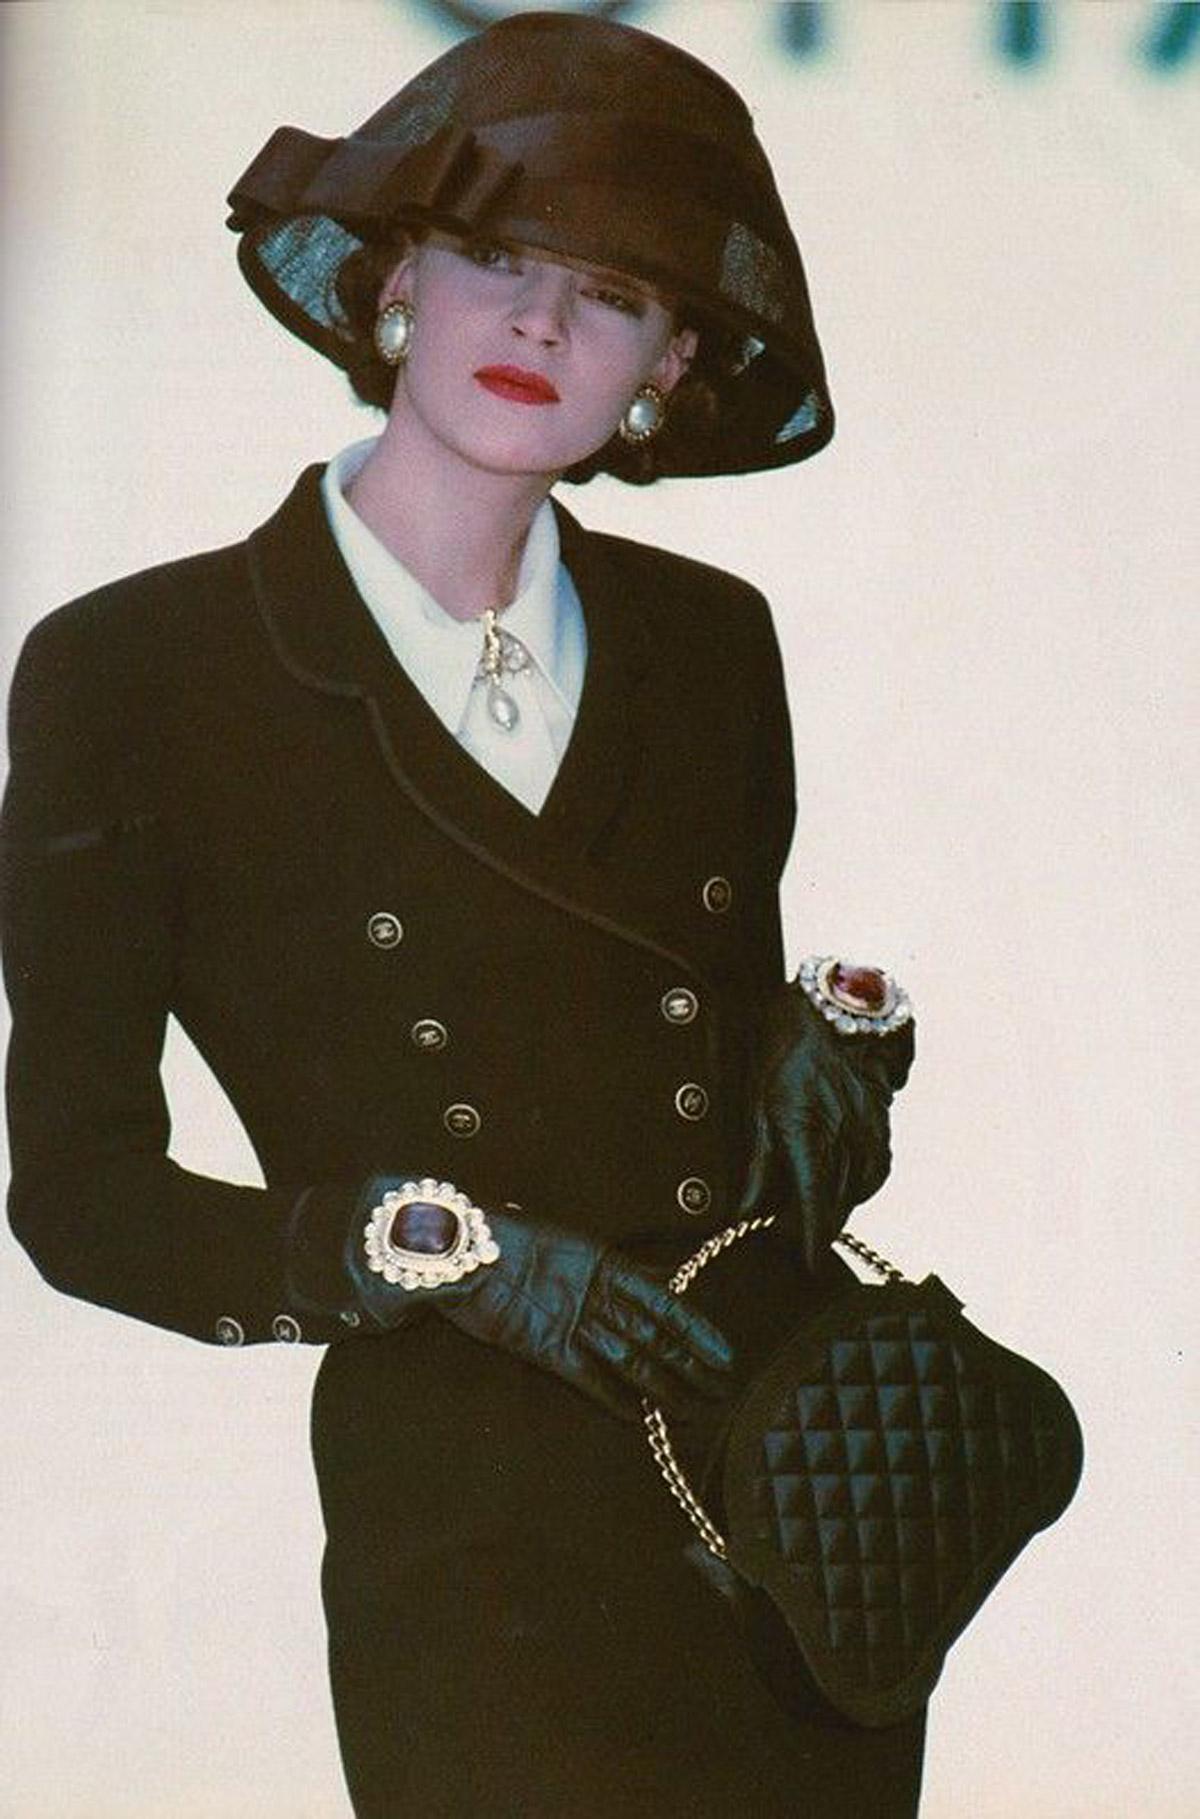 Chanel Velours Noir Vintage 80's Micro Mini Top Handle Minaudière Clutch Bag

Haute Couture printemps-été 1988 

Quincaillerie en or
Garniture en nylon
Velours matelassé 
Poignée supérieure en chaîne de style Kelly
Fermeture à